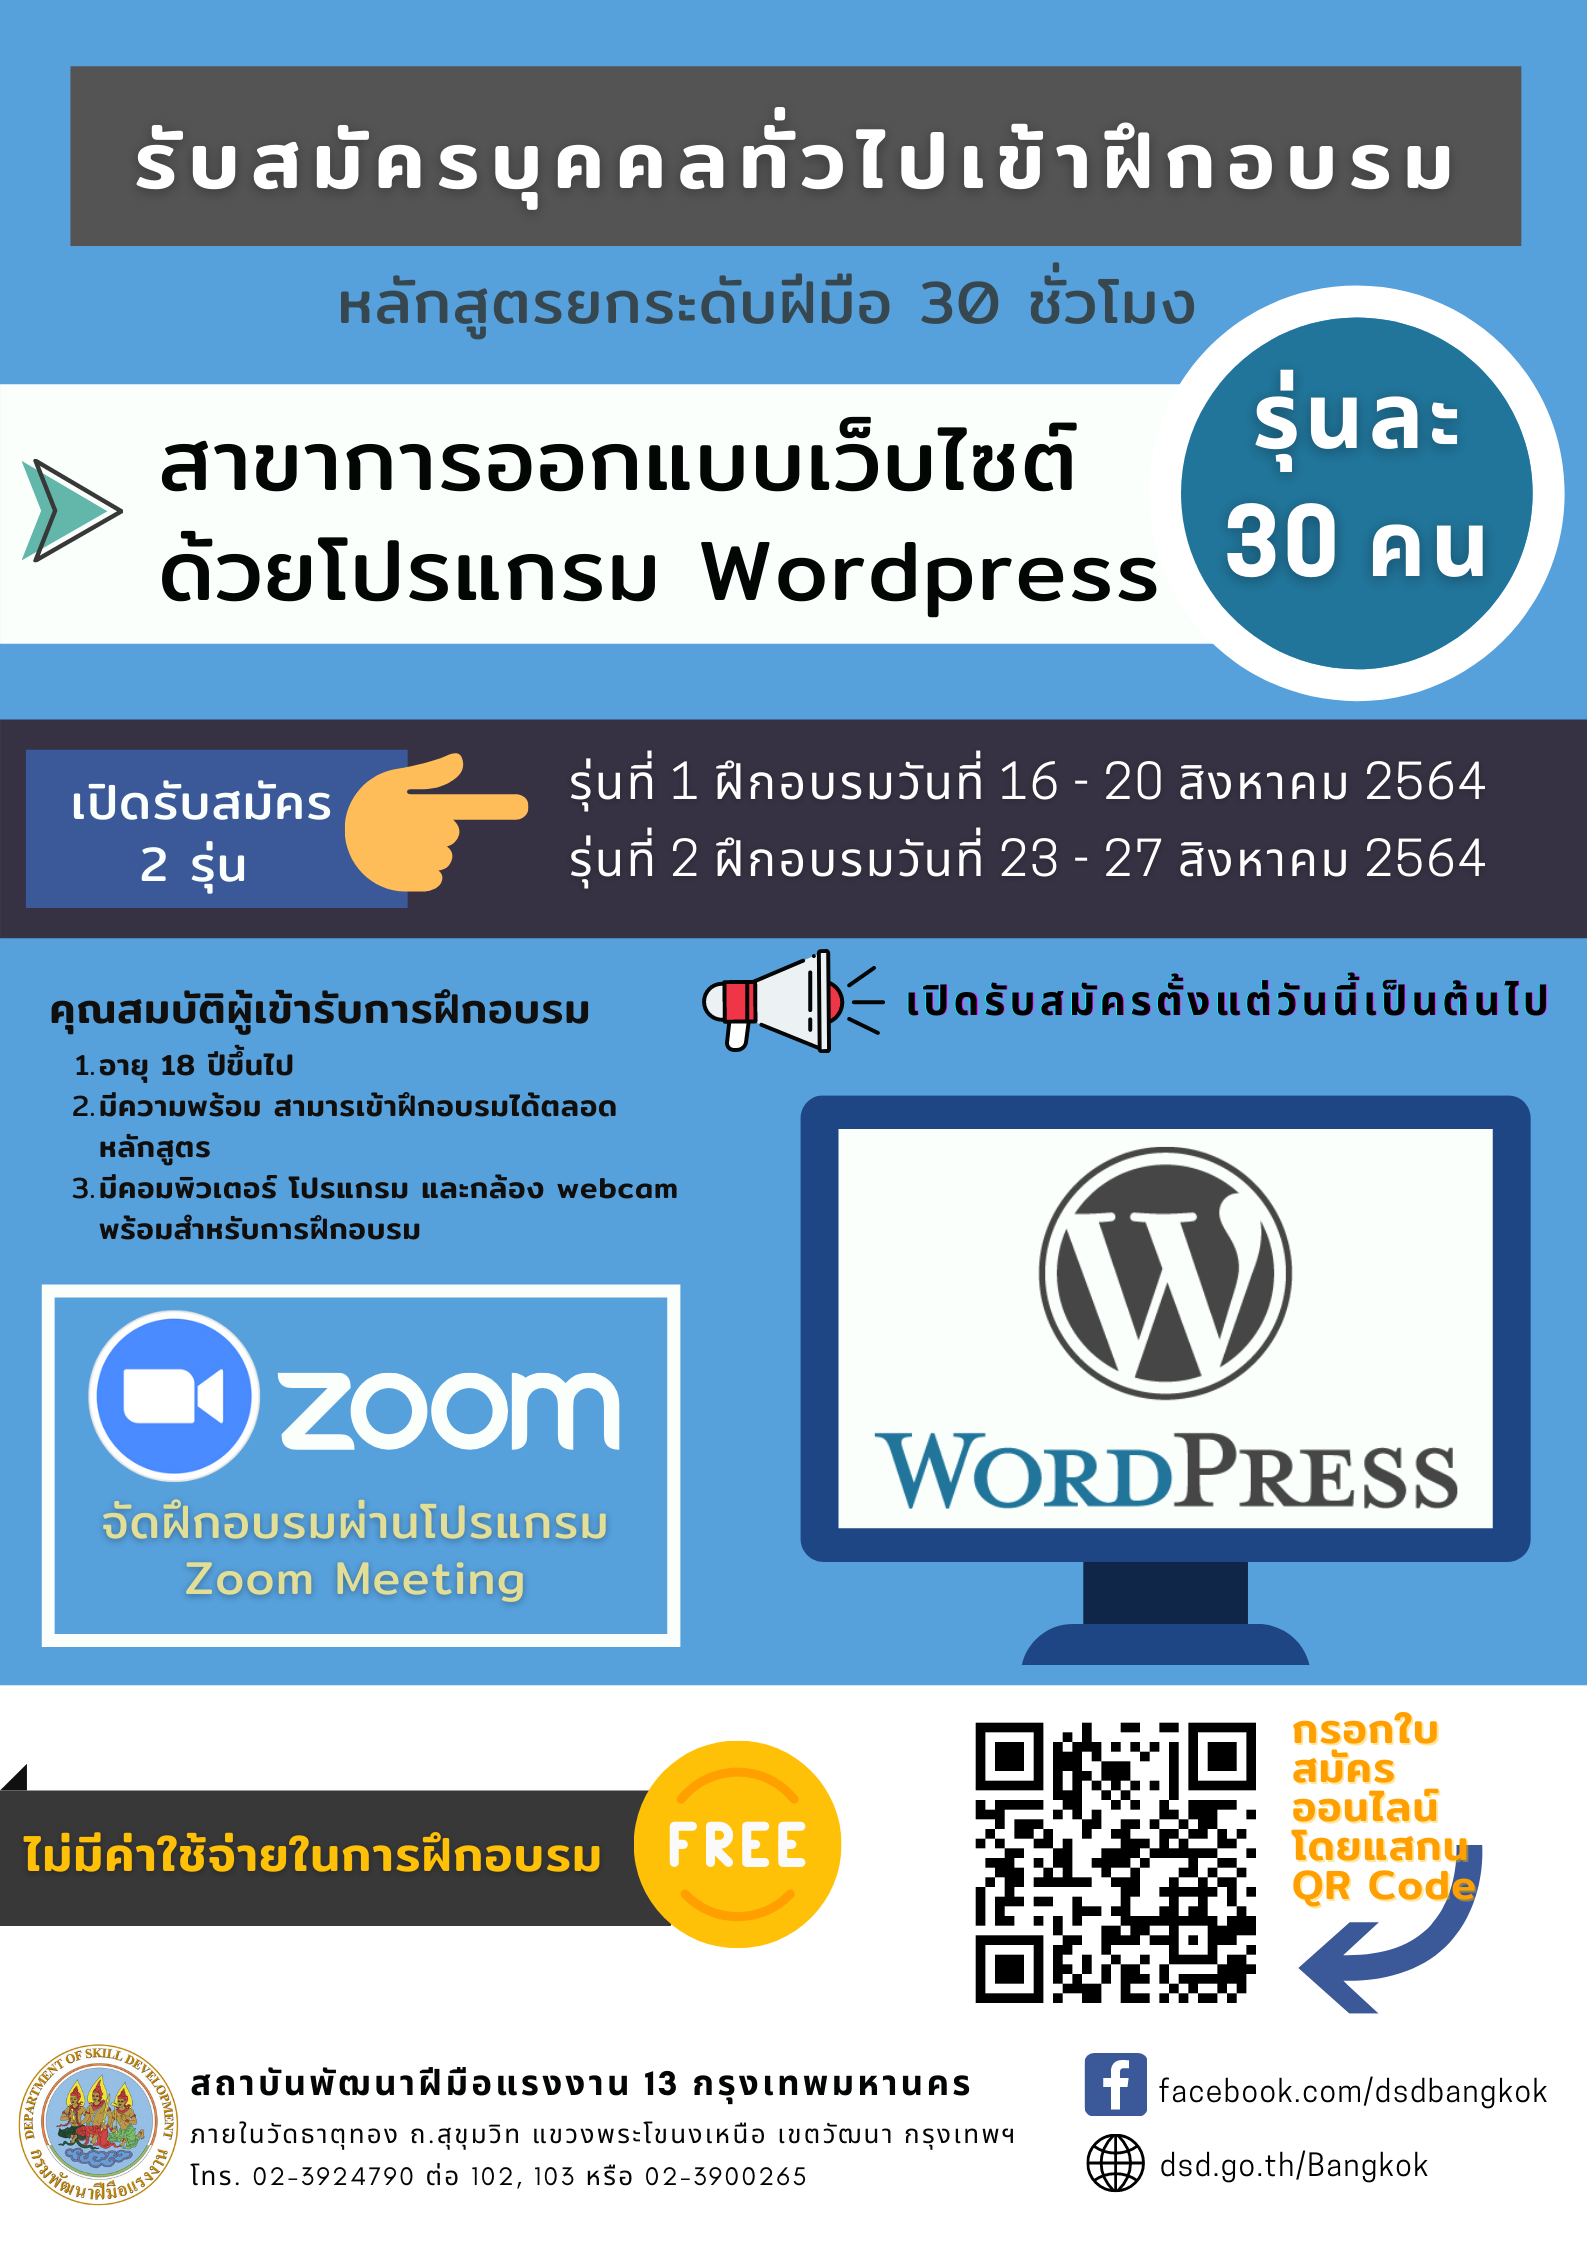 สถาบันพัฒนาฝีมือแรงงาน 13 กรุงเทพมหานคร เปิดอบรมออนไลน์การออกแบบเว็บไซต์ด้วยโปรแกรม Wordpress ฟรี!!